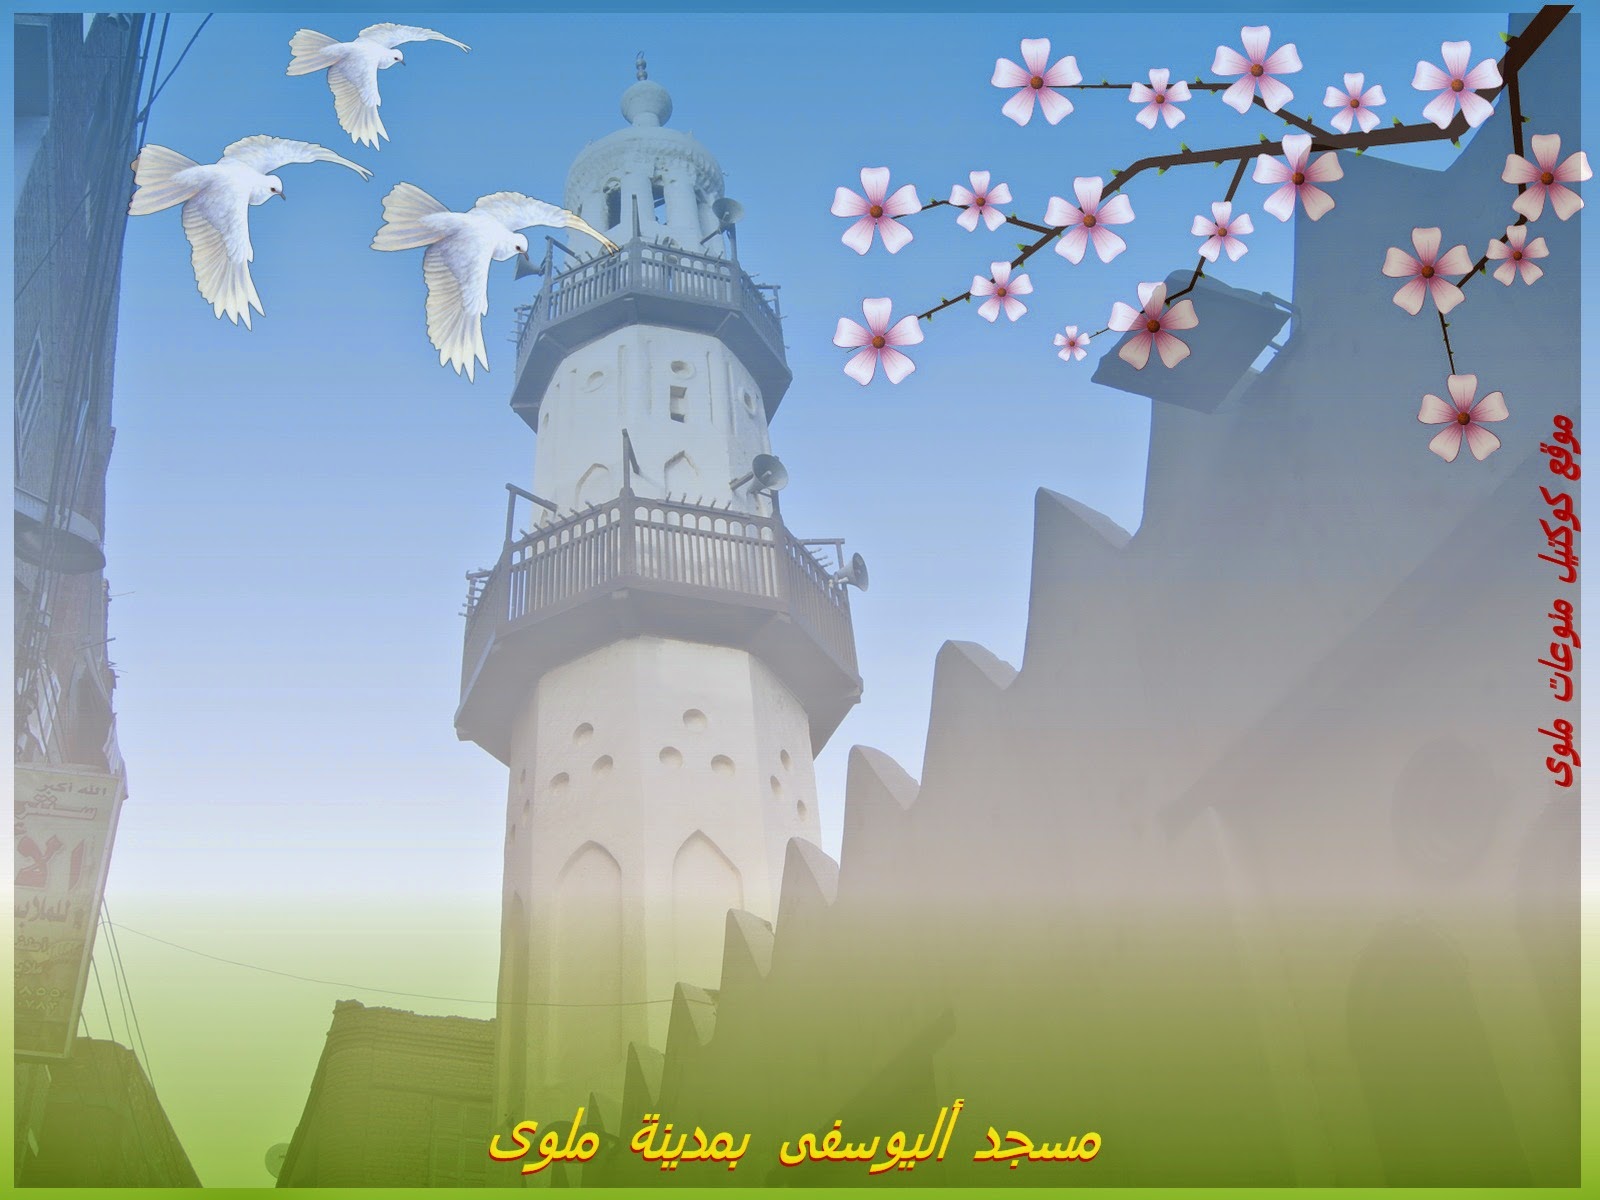 صورة من تصميمى لمئذنة مسجد اليوسفى باحب المدن الى روحى وقلبى ملوى